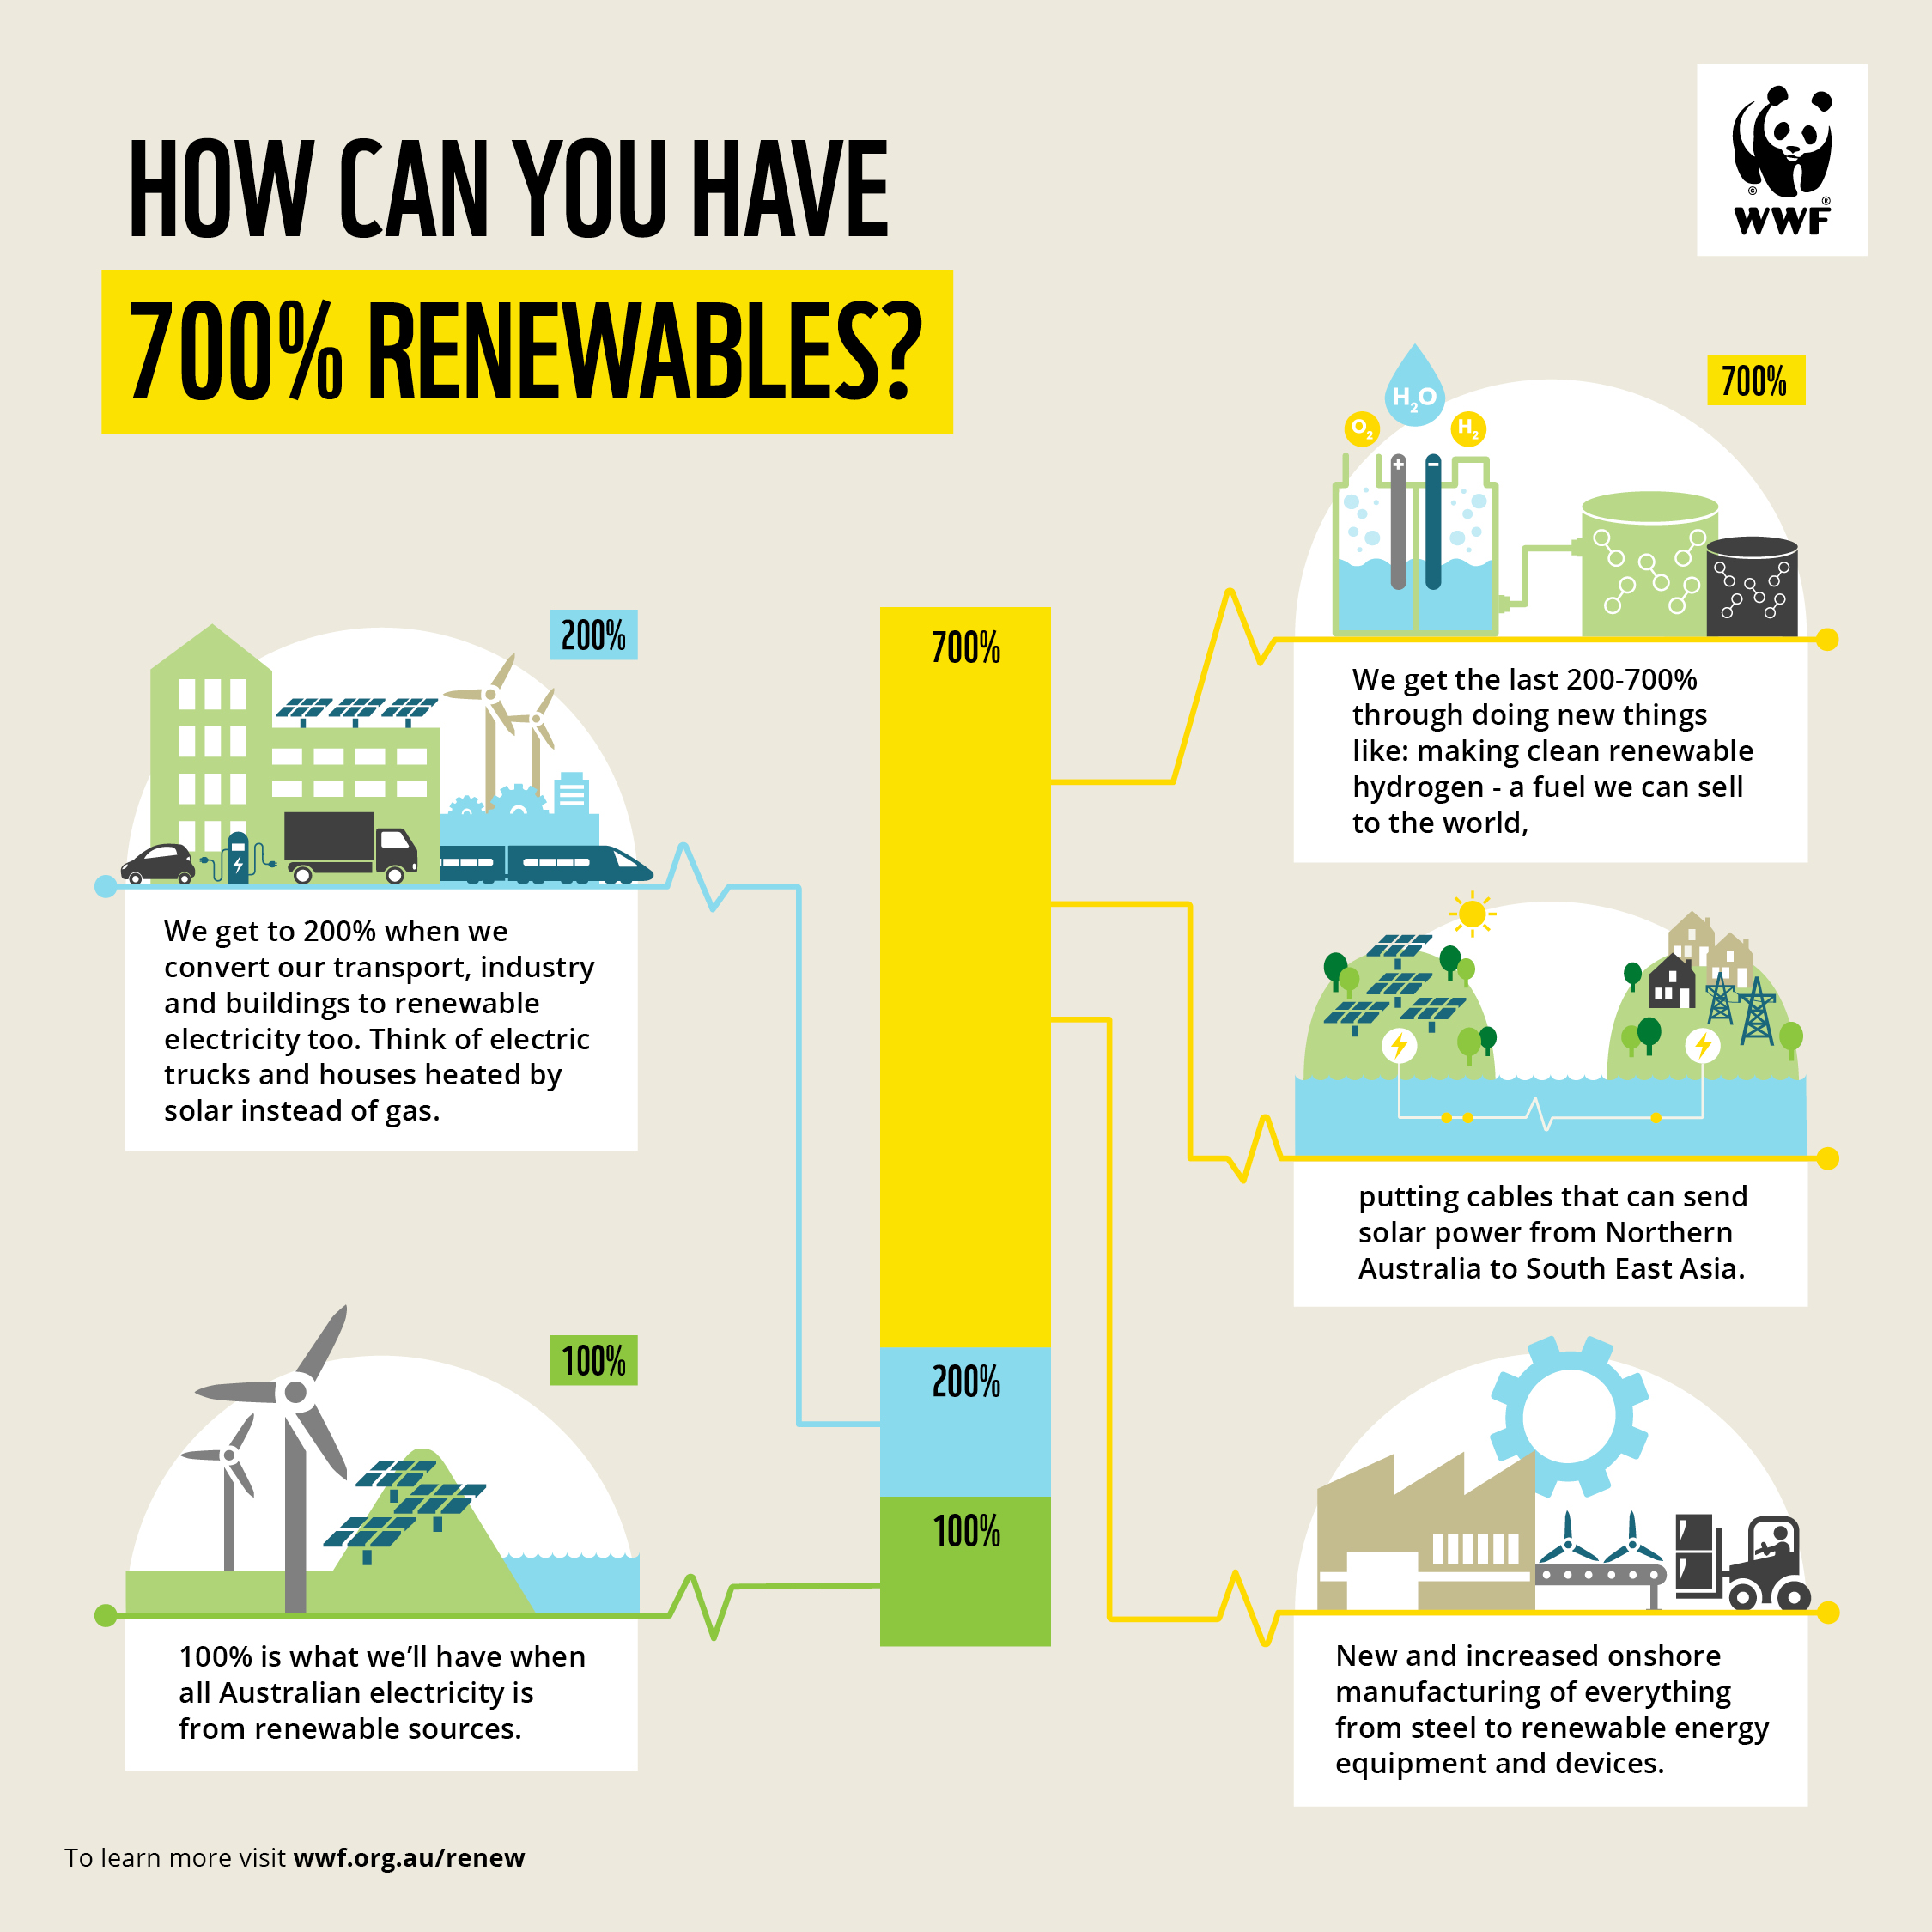 WWF_infographic_700Renewable_NEW